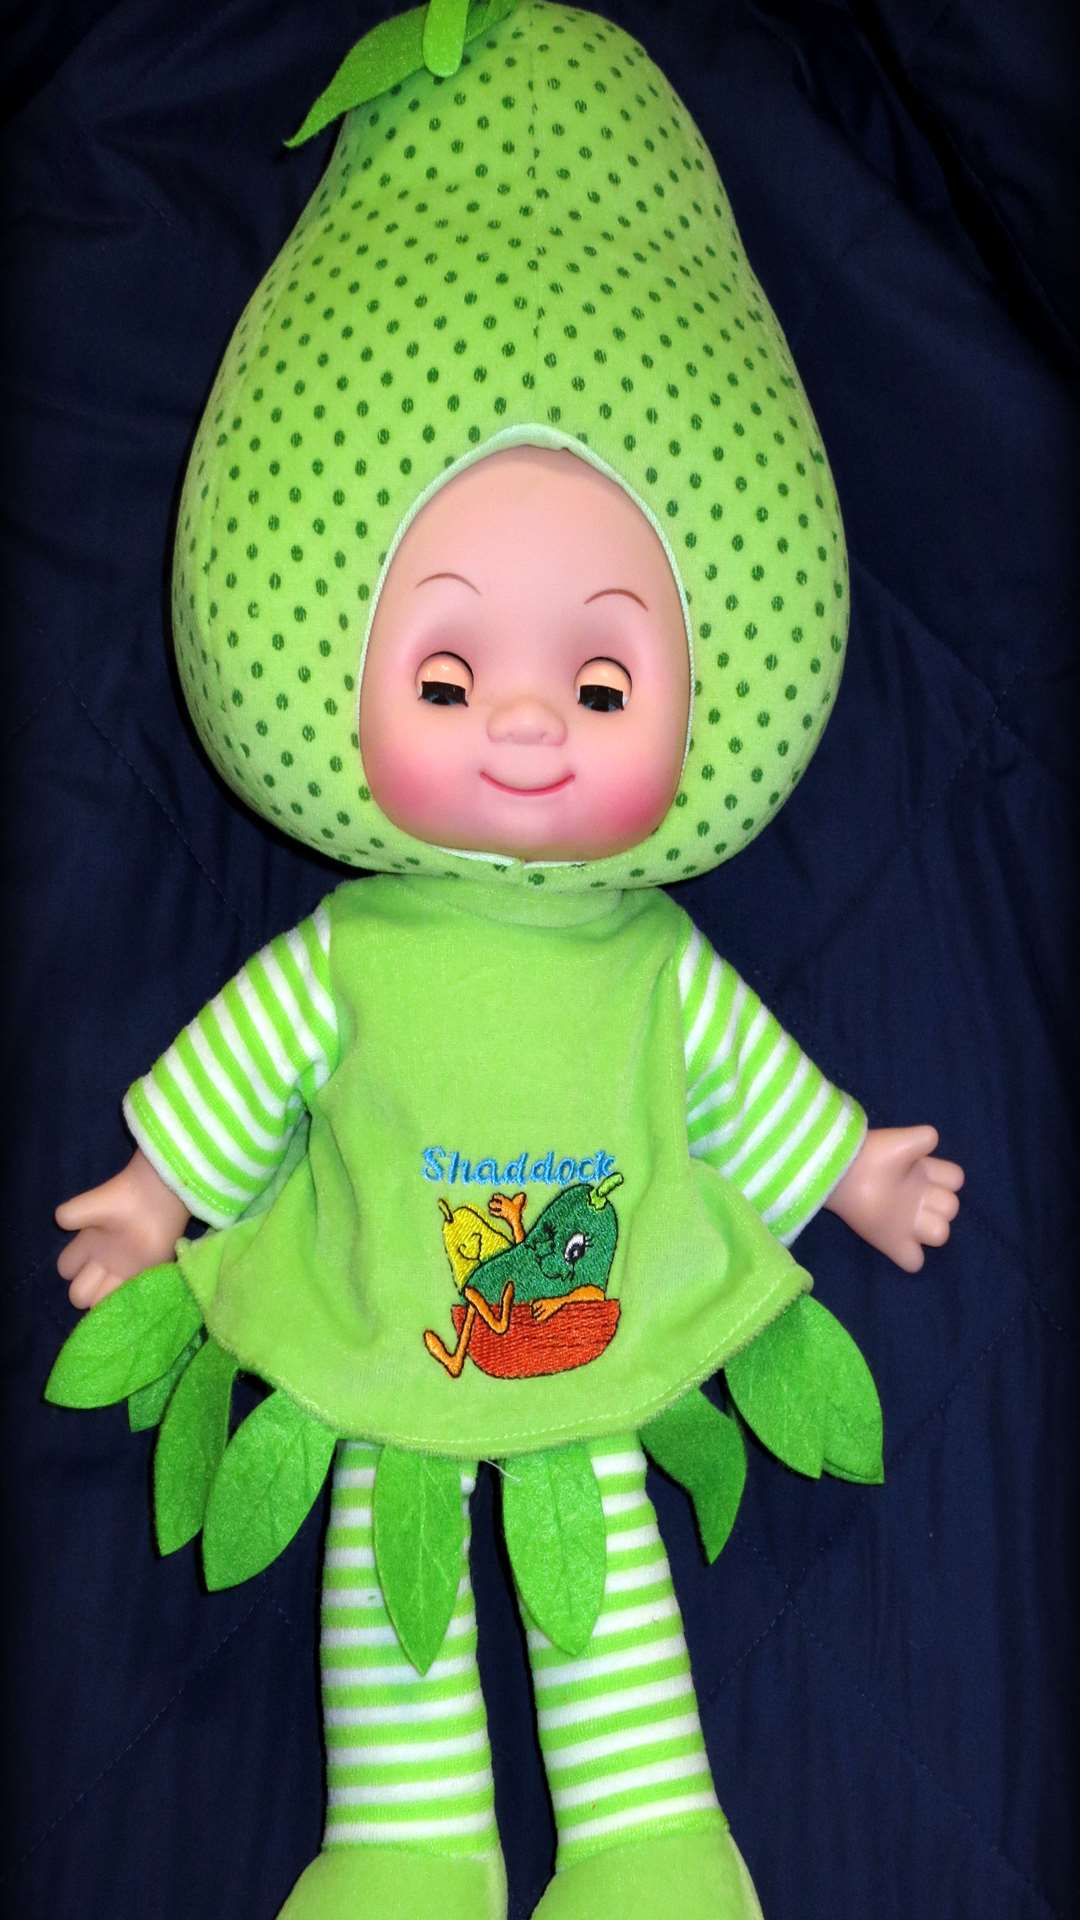 Fruit-head dolls have been recalled